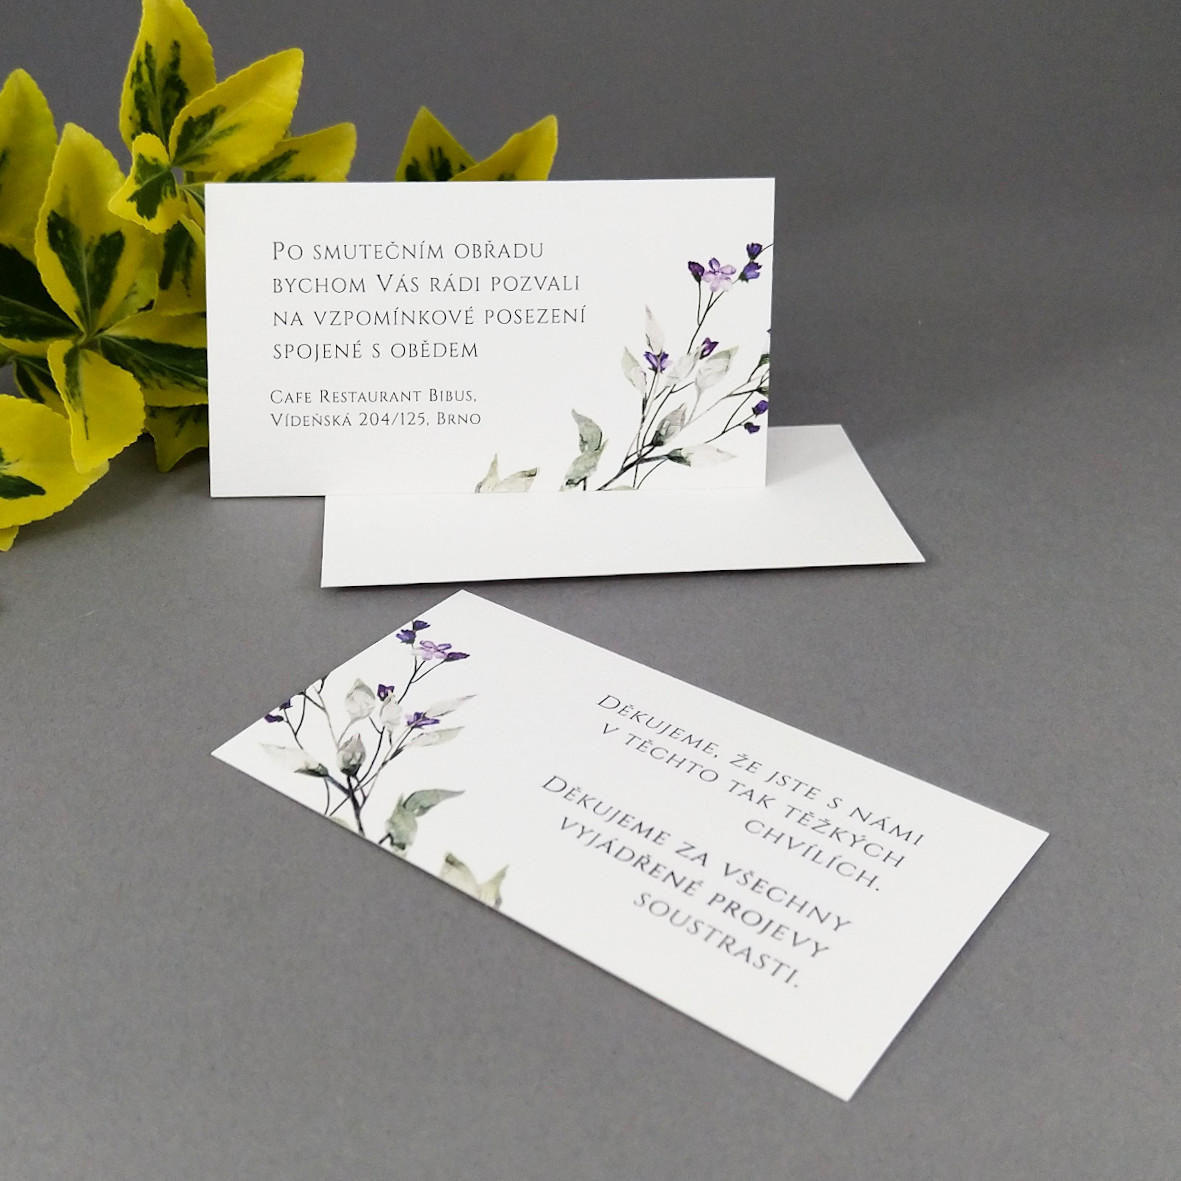 Pozvánka, informační karta – s motivem větvičky a drobných fialových květů, formát 85 × 55 mm, jednostranná